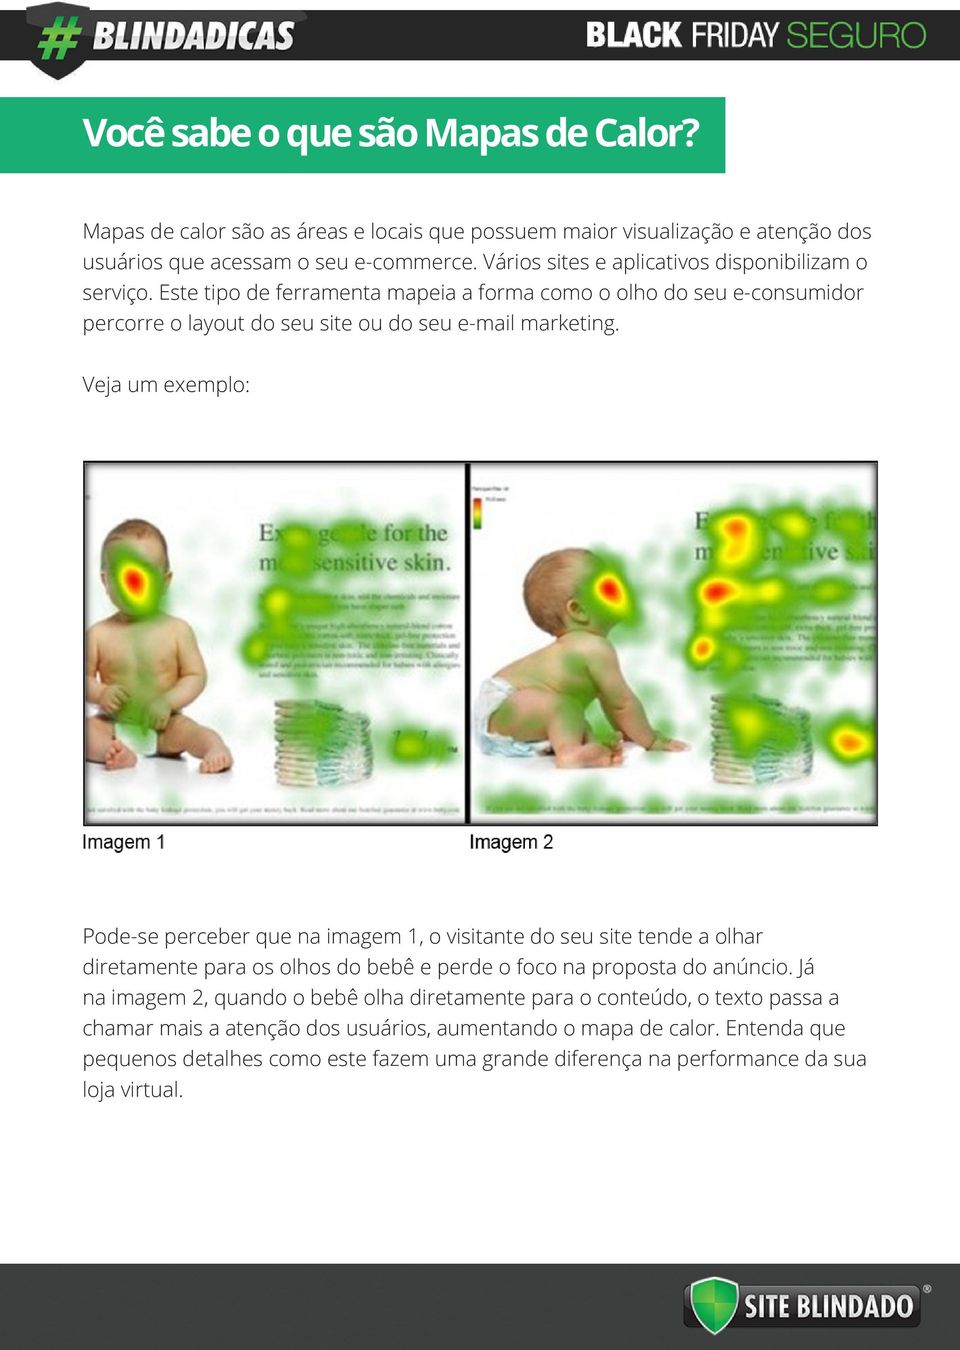 Veja um exemplo: Pode-se perceber que na imagem 1, o visitante do seu site tende a olhar diretamente para os olhos do bebê e perde o foco na proposta do anúncio.